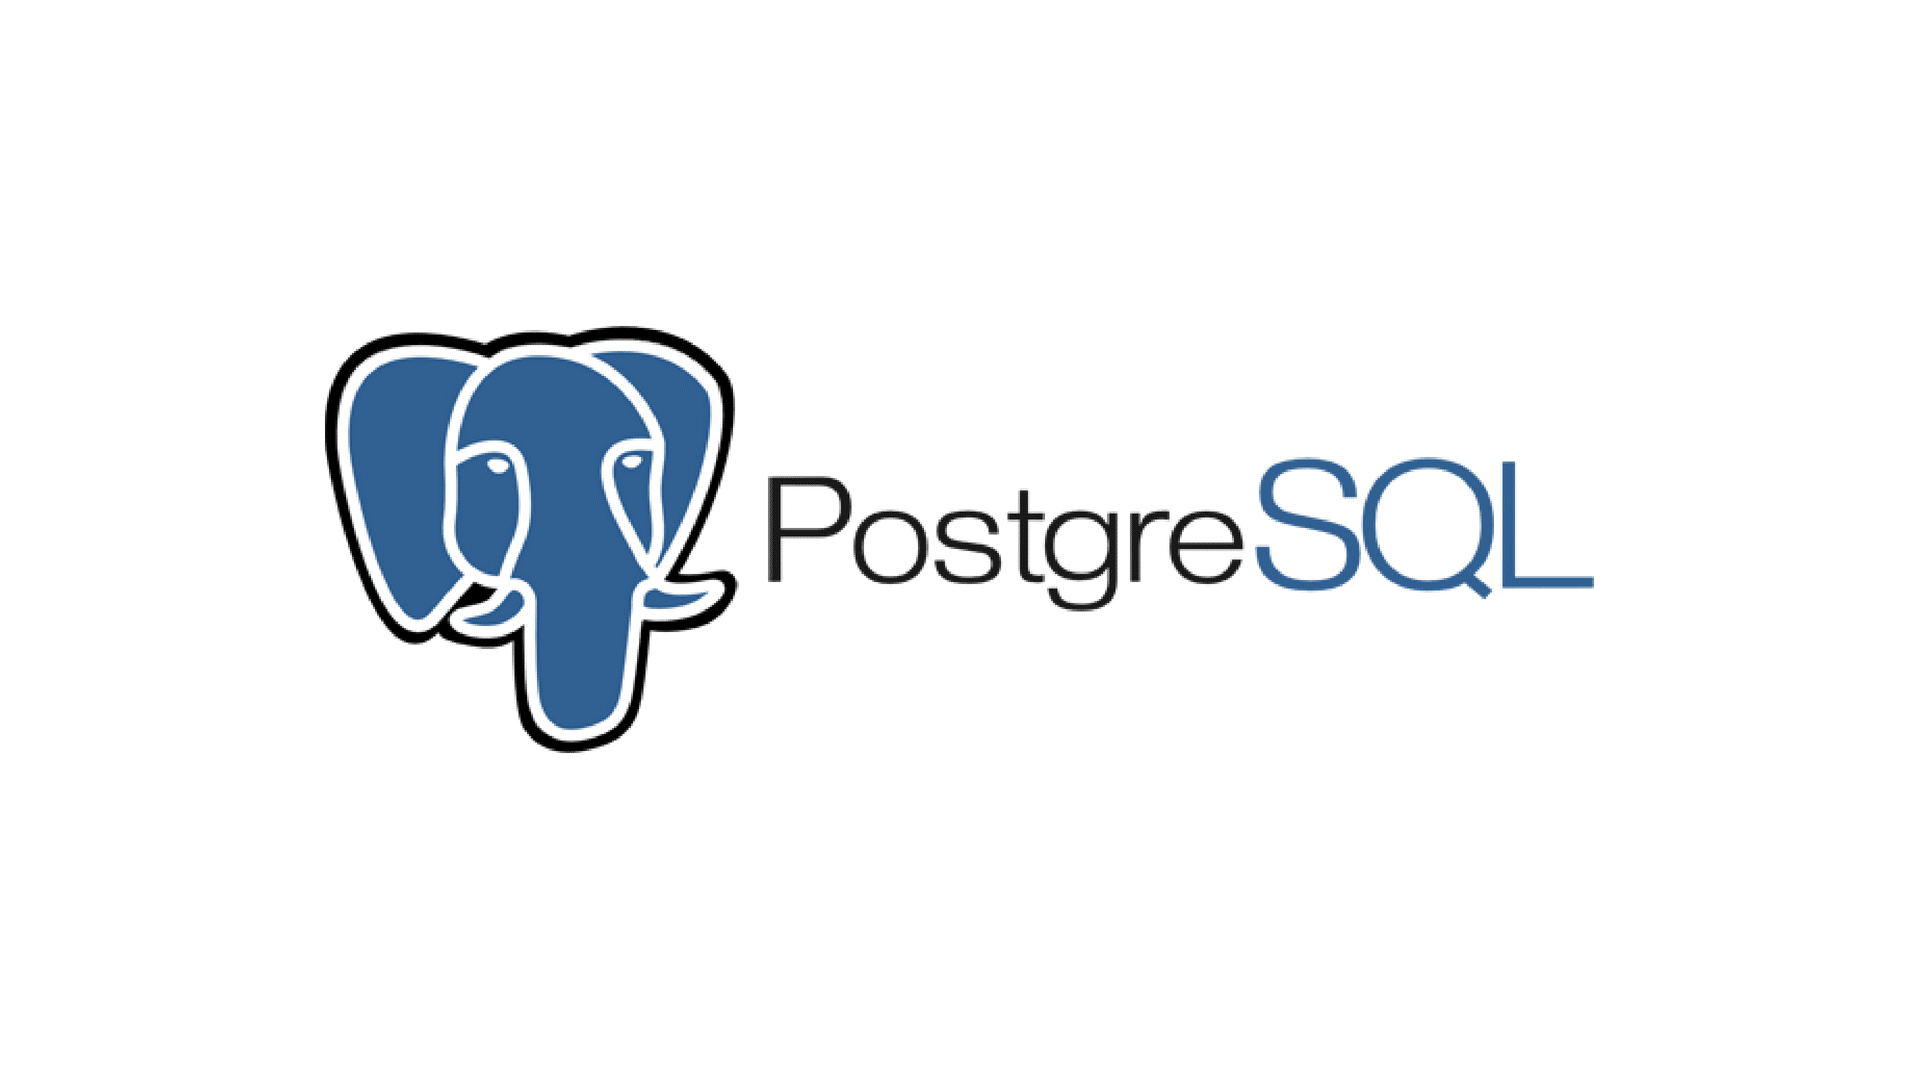 Let’s check what’s new in PostgreSQL 15!